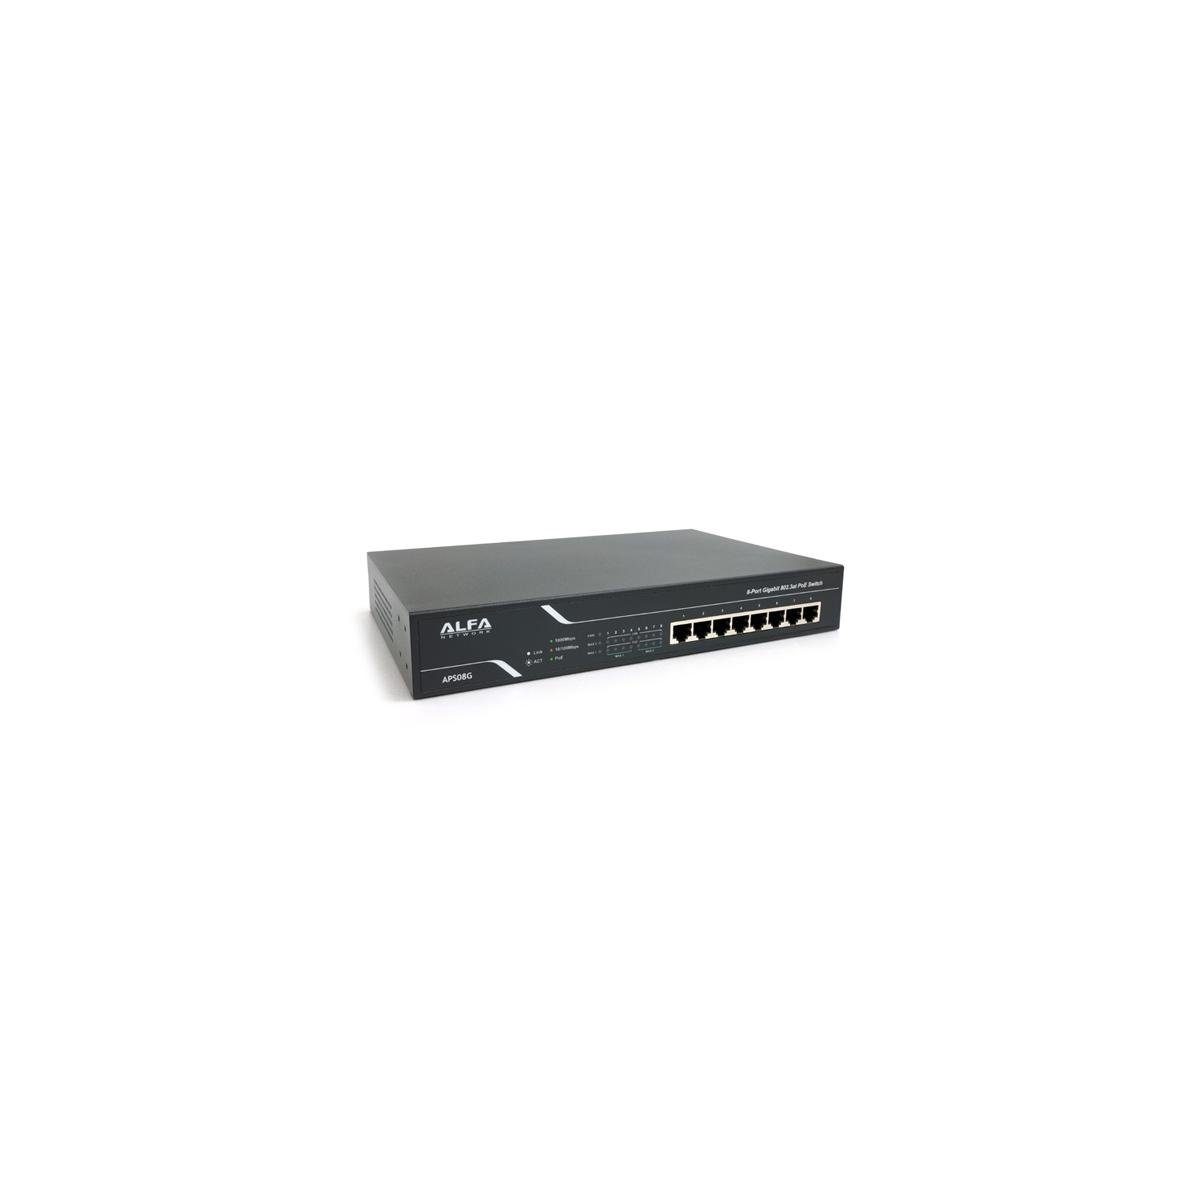 Switch APS08G Netzwerk-Switch Gigabit Desktop 802.3at - PoE 8-Port Alfa